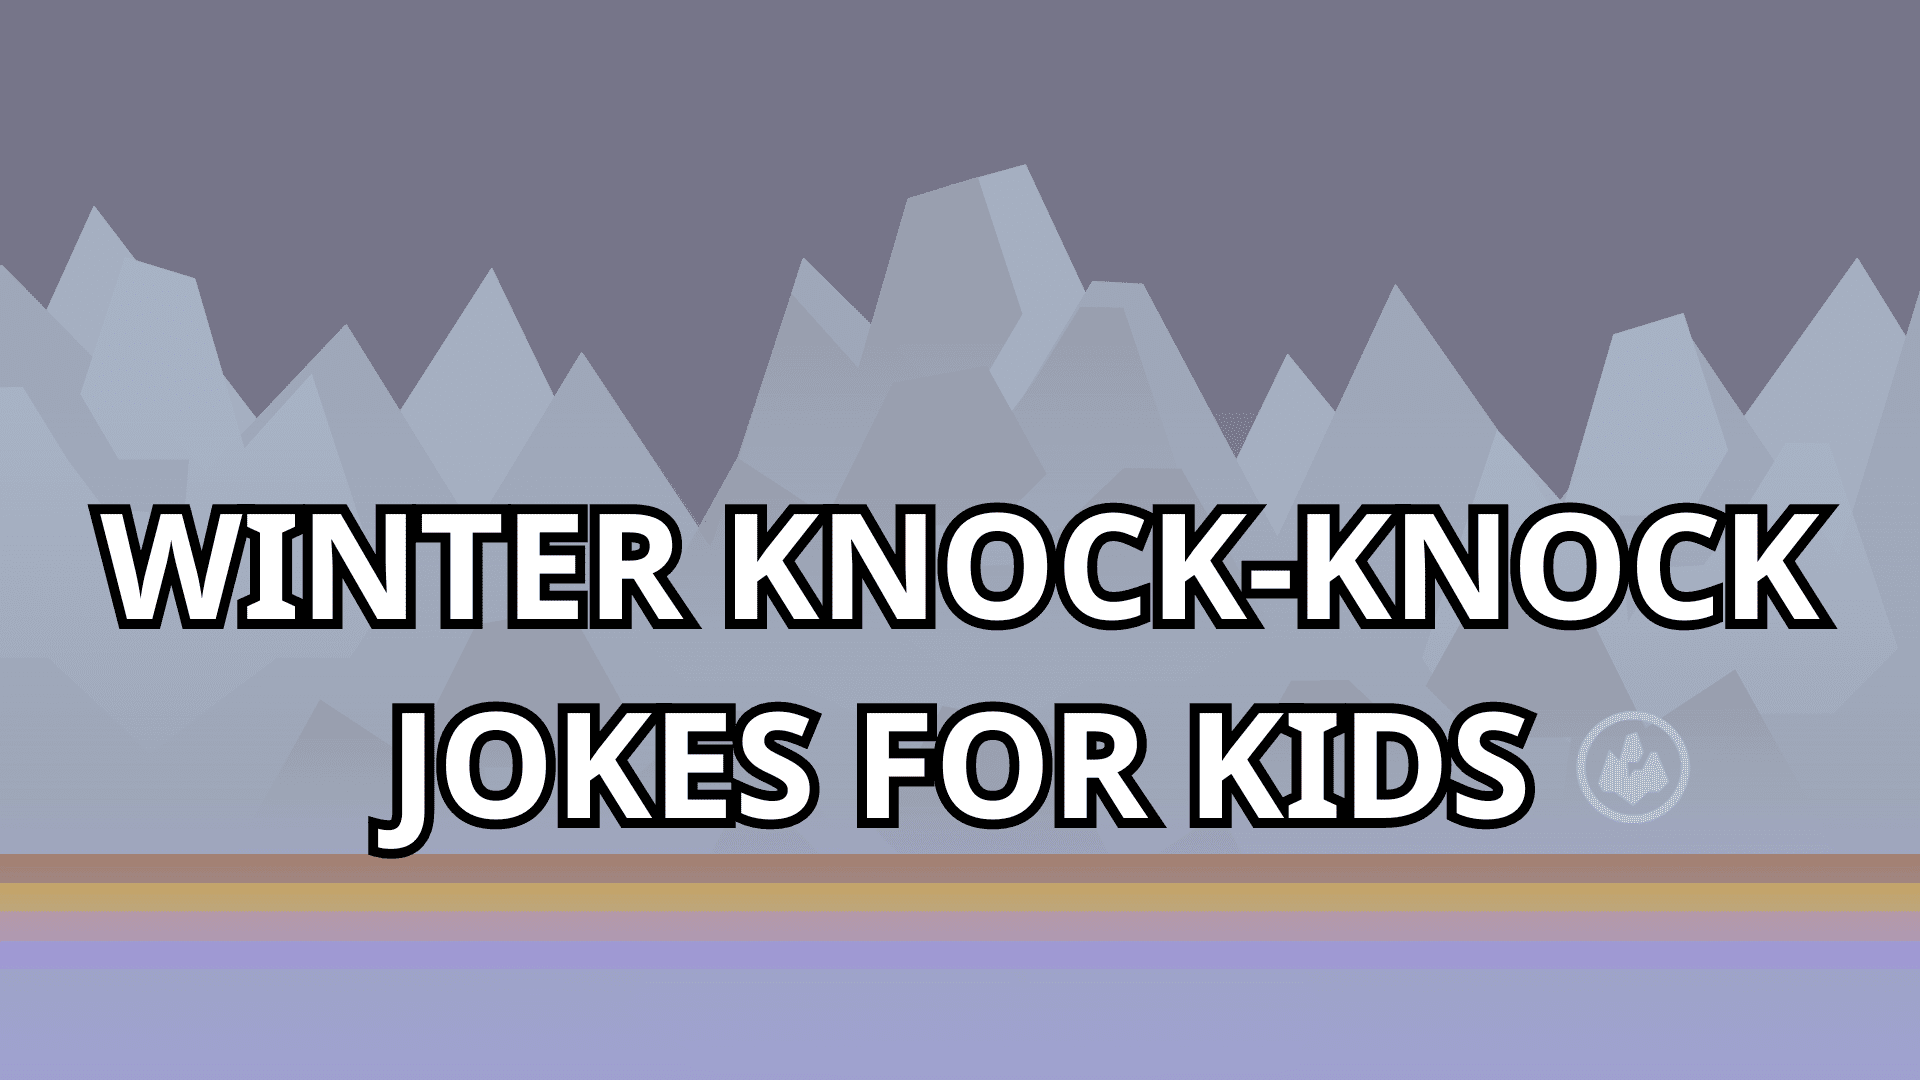 10 Winter Knock-Knock Jokes For Kids